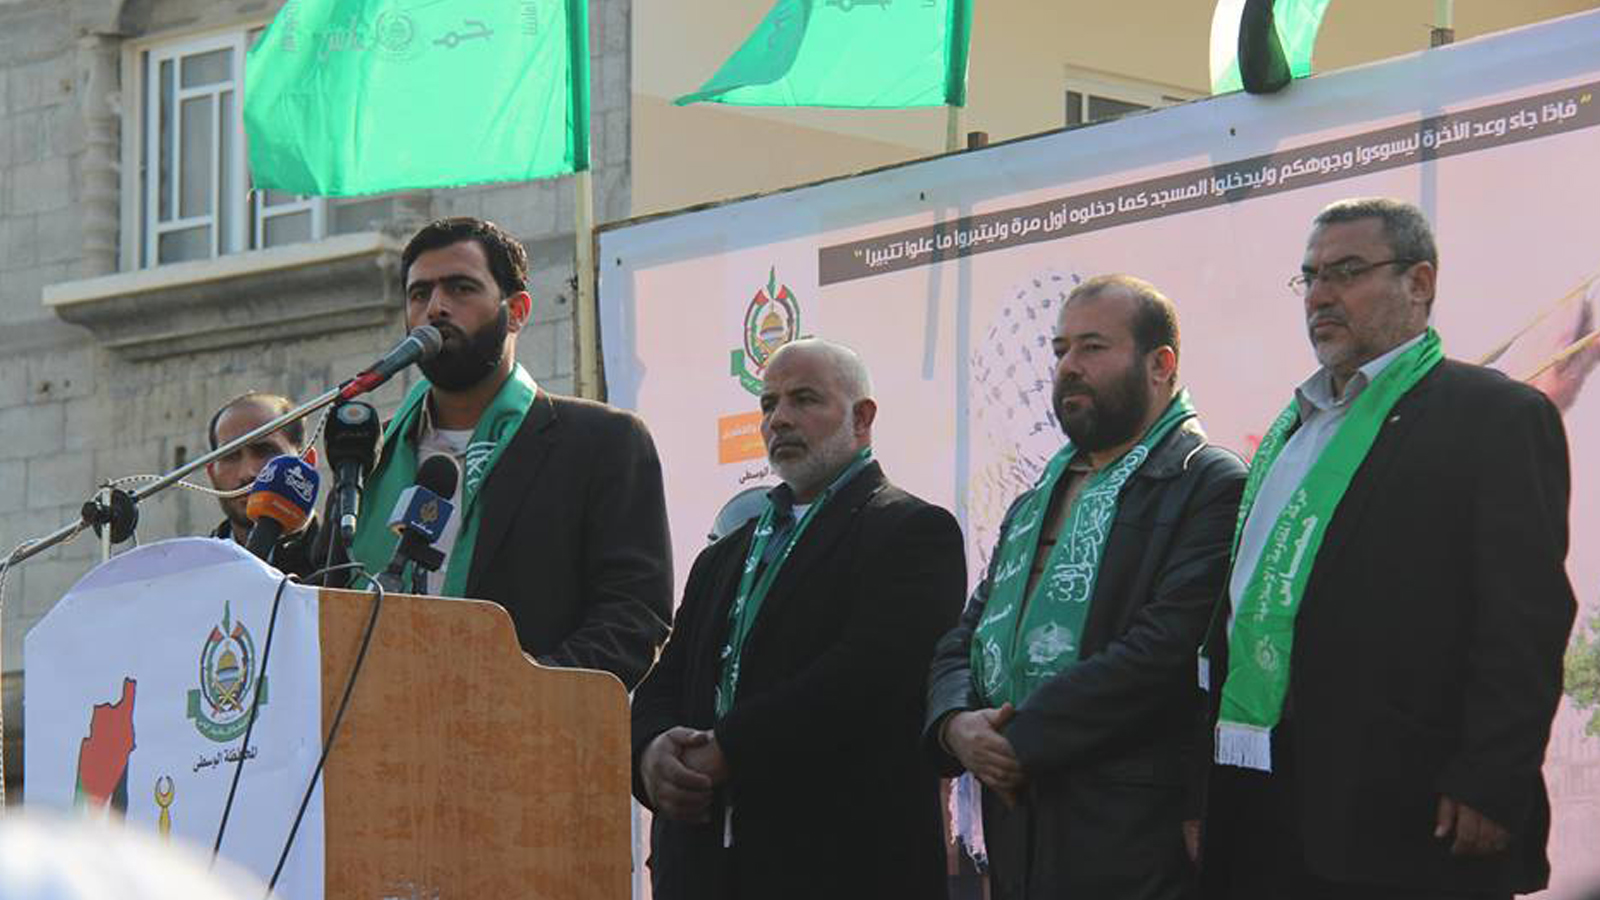 مسيرات لـ"حماس" في ذكرى انطلاقتها.. تدعم الهبة الجماهيرية